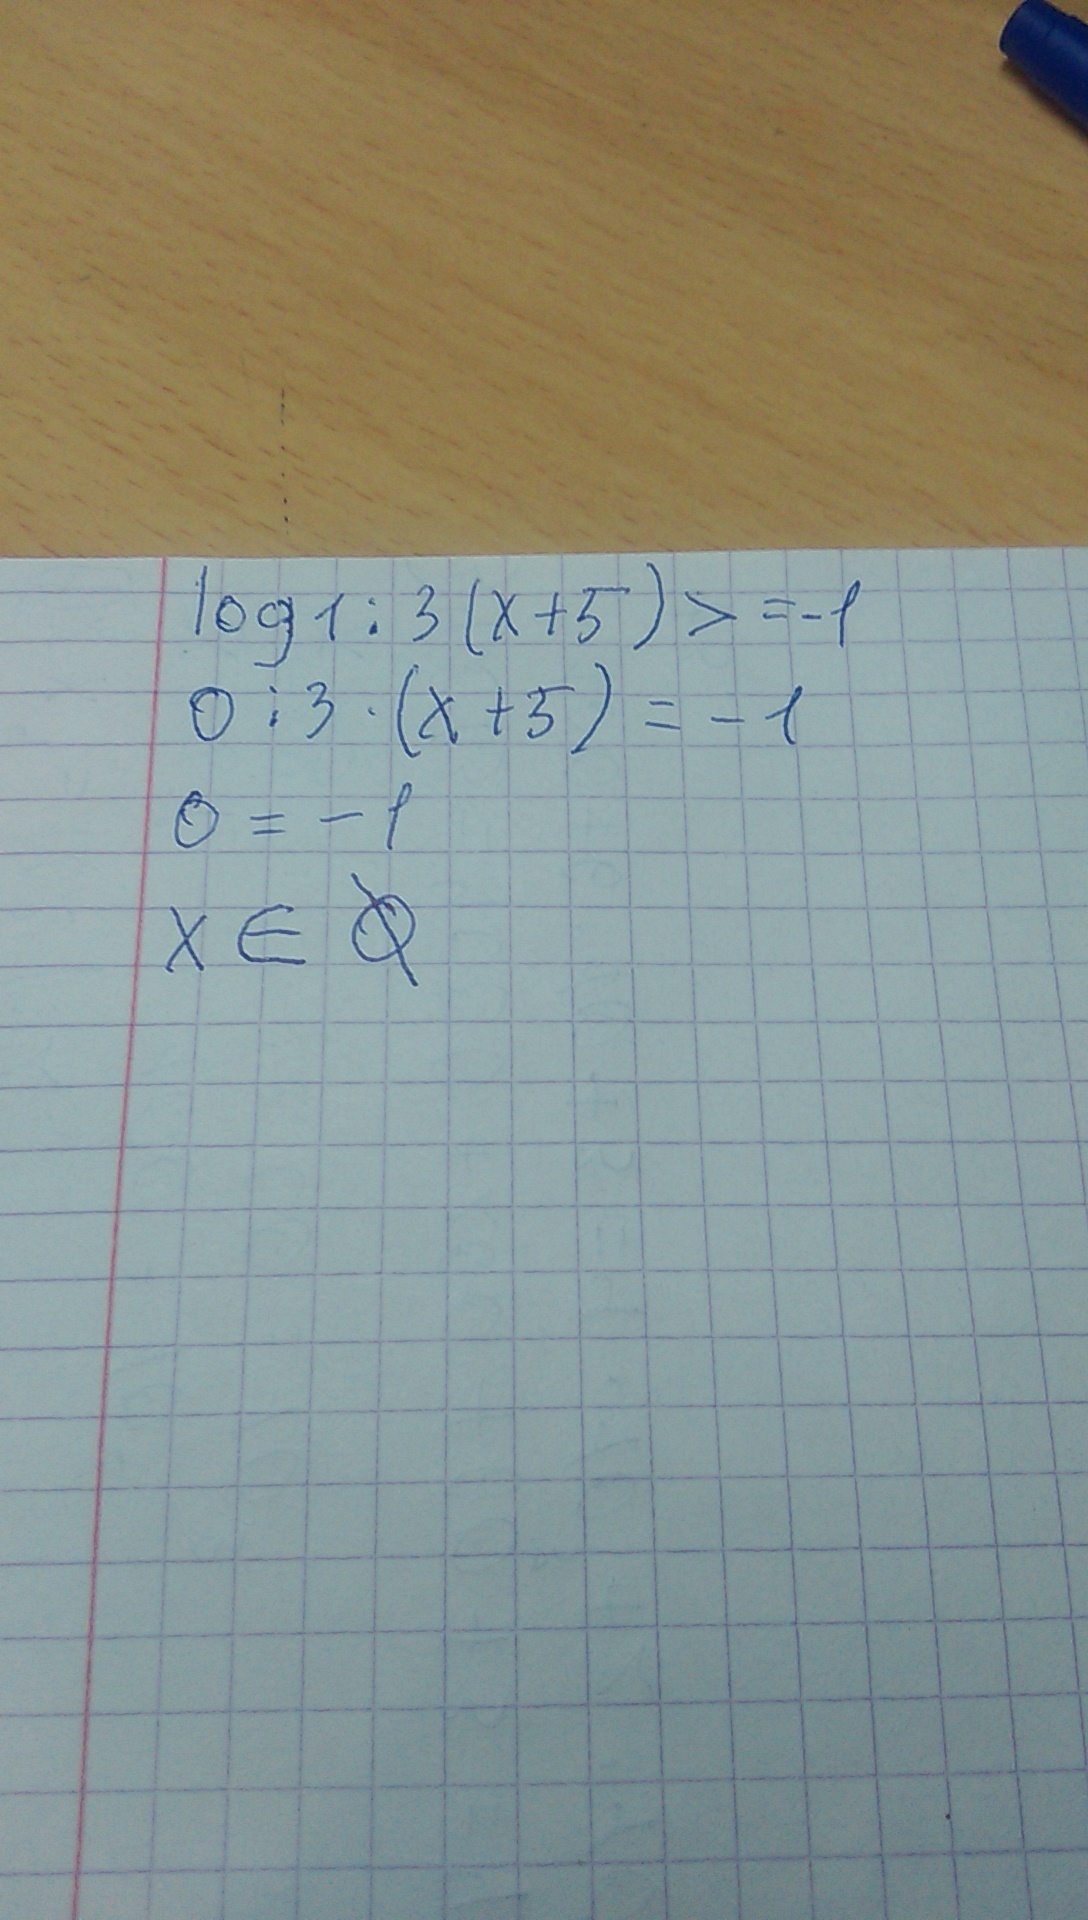 1 5 log3 x 3. Log1/3(x-5)>1. Log1 5 3x-5 log1 5 x+1. (X+1)+(X+3)=5. Log5x>1.